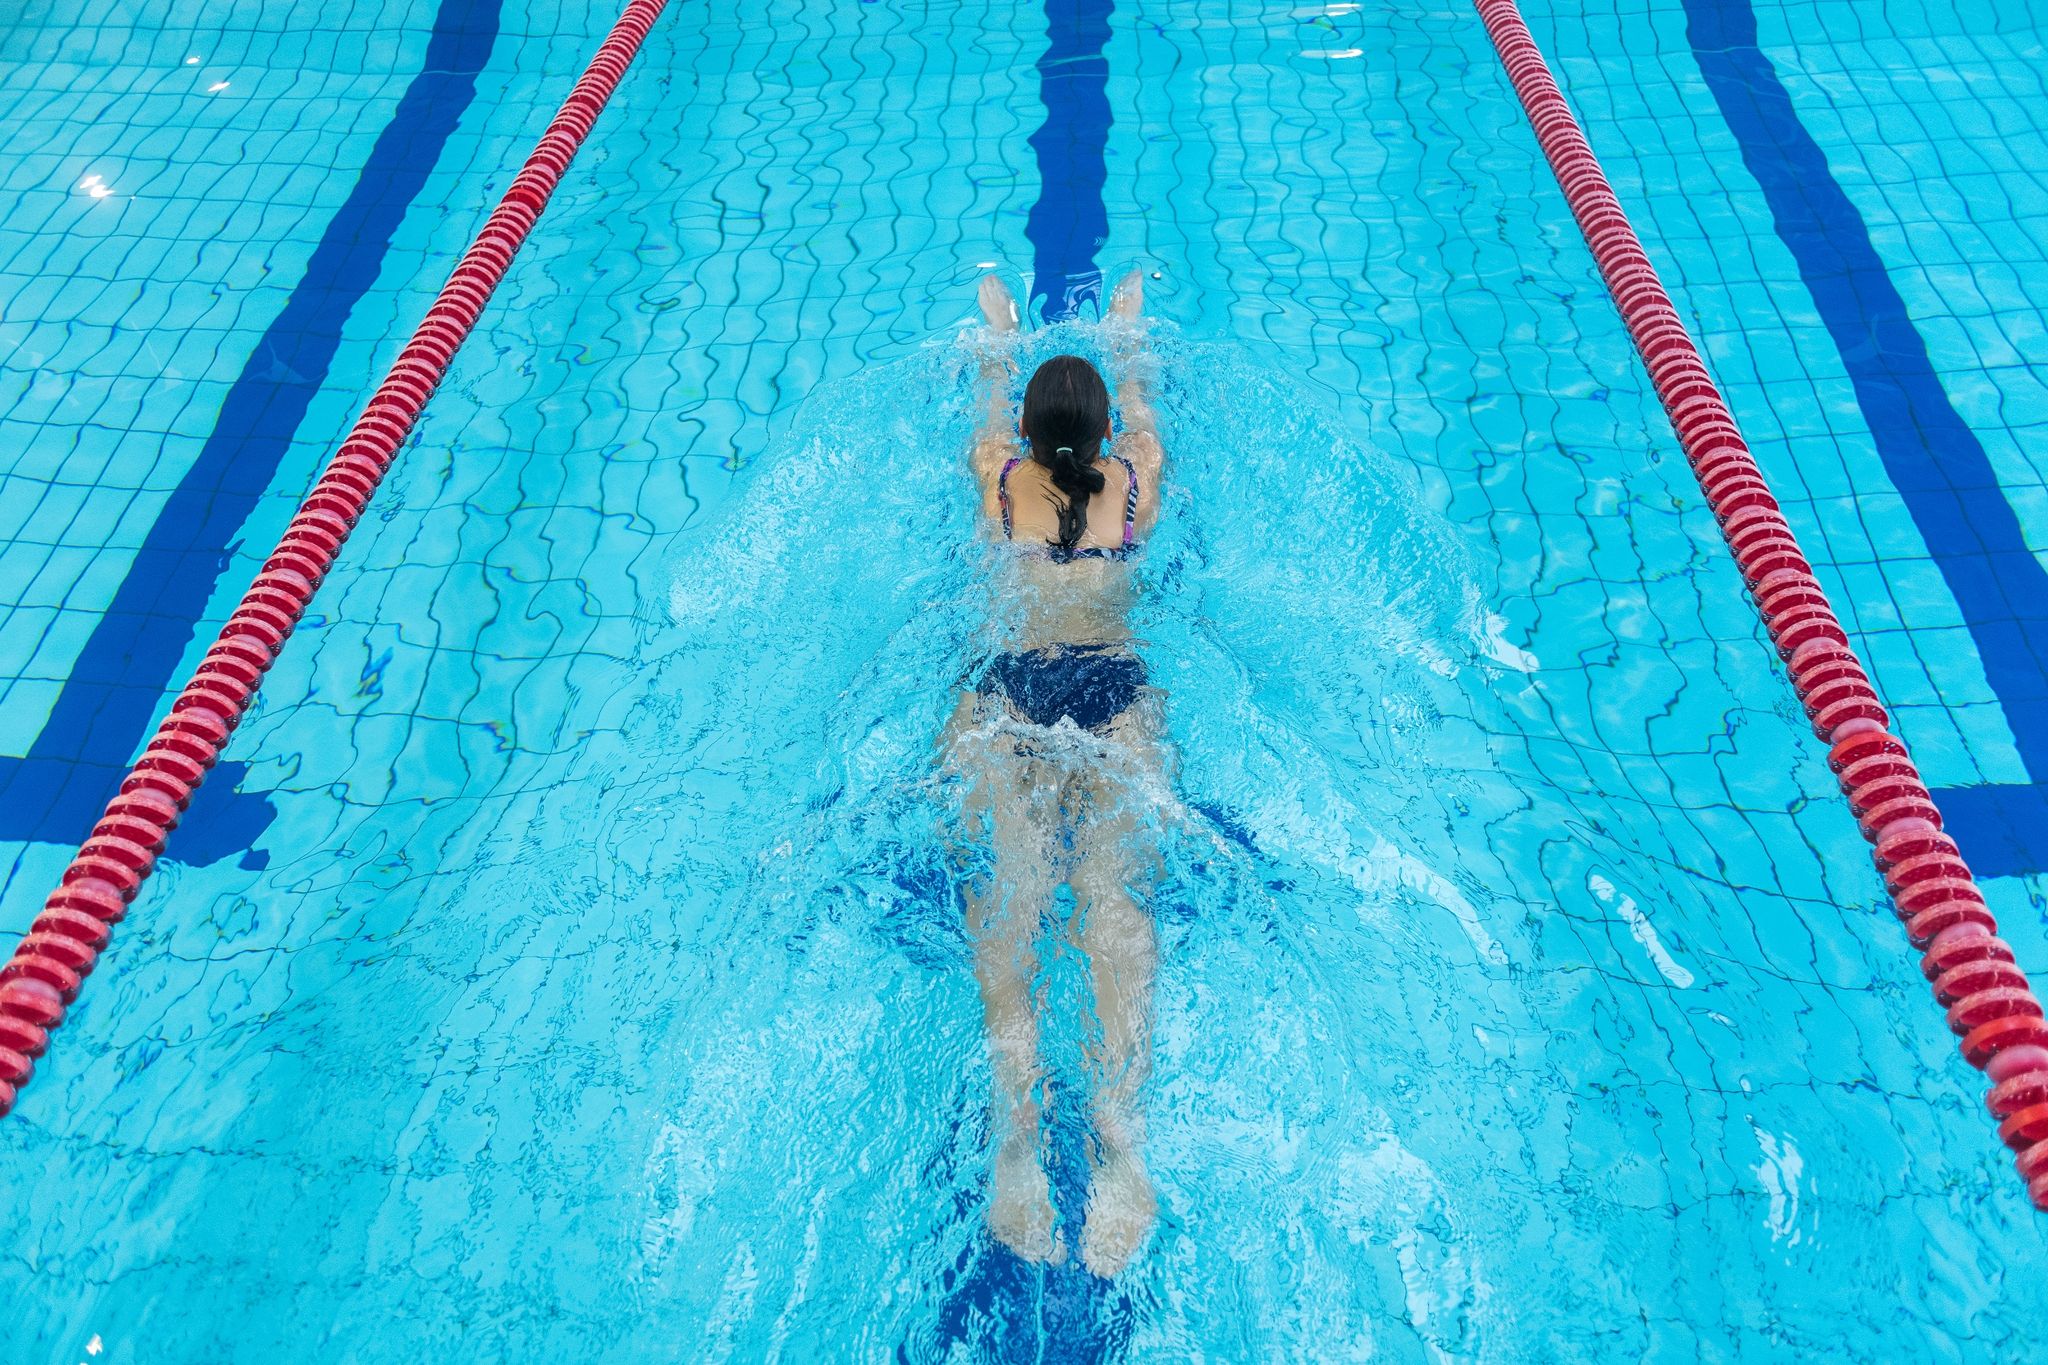 Neoprenanzug statt Bikini? Angesichts der niedrigeren Temperaturen im Schwimmbecken sucht manch einer nach Alternativen.